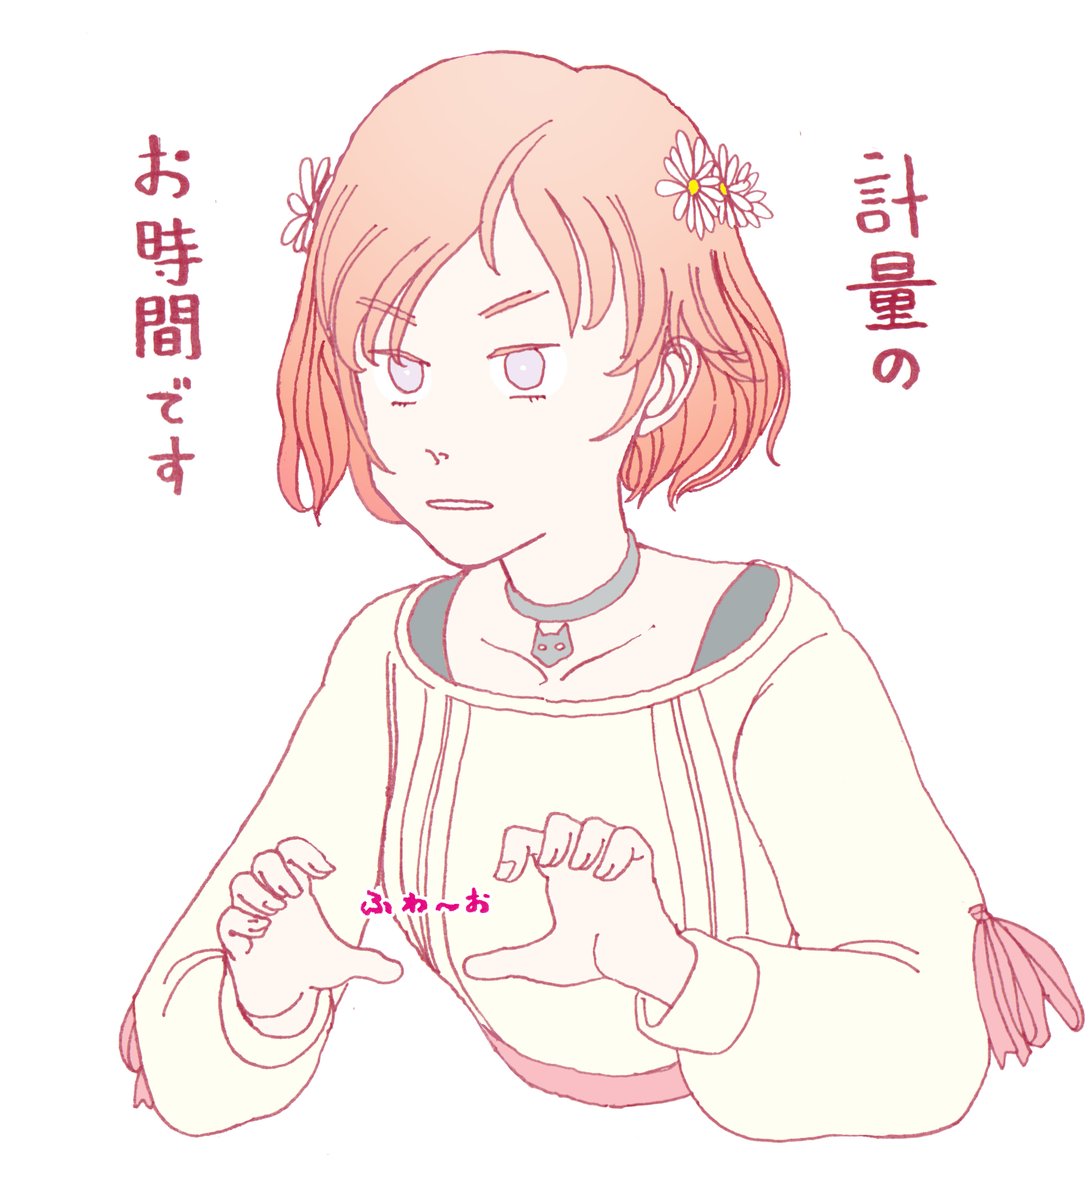 【悲報】柾花音さん(19)、自らNGネタにそこそこガッツリ食いついてしまう
#まかのんれしぴ 